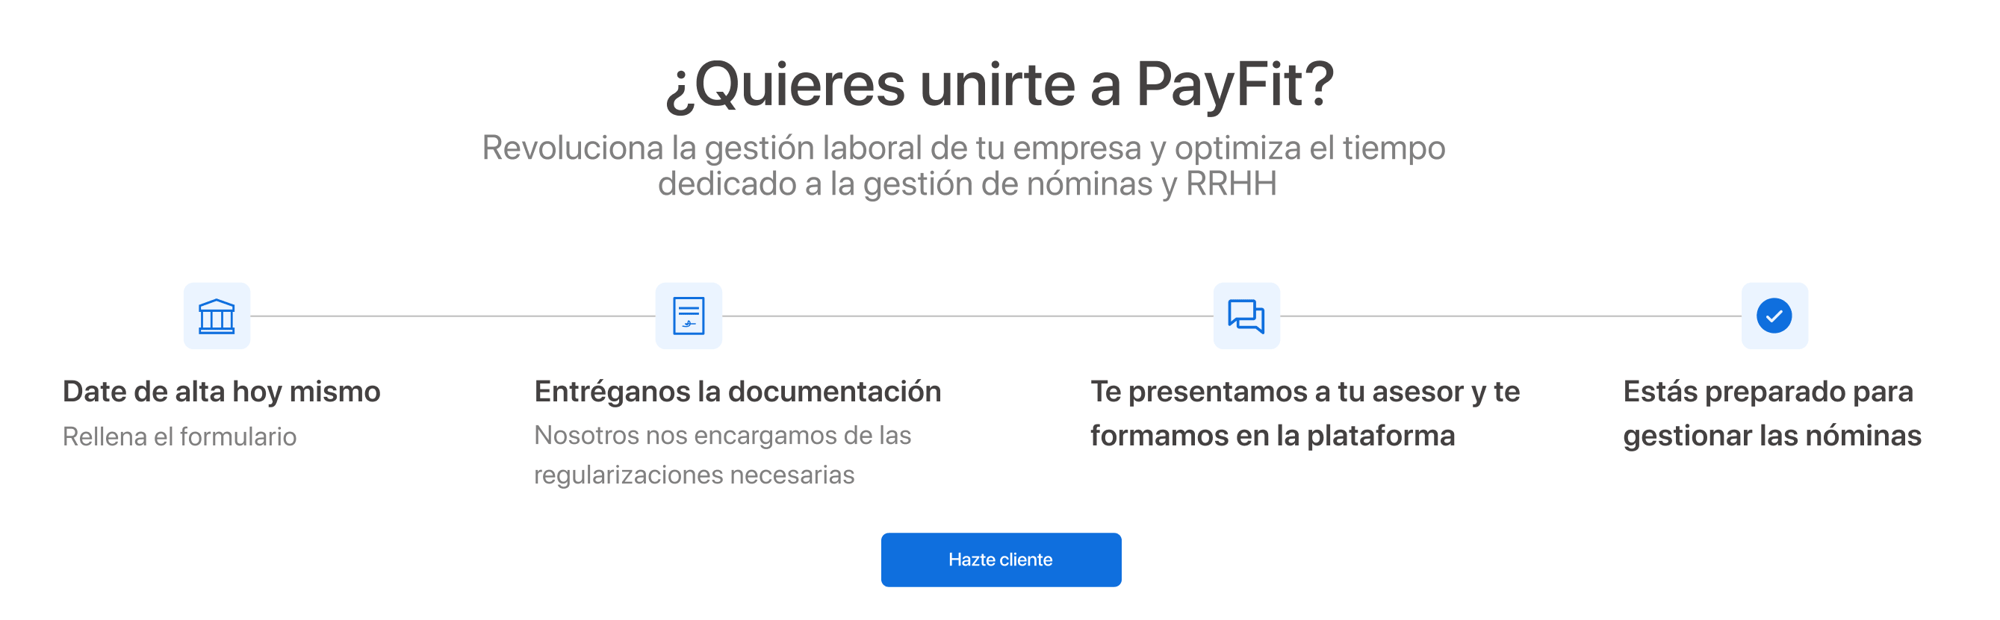 ¿Quieres unirte a PayFit_ (1)